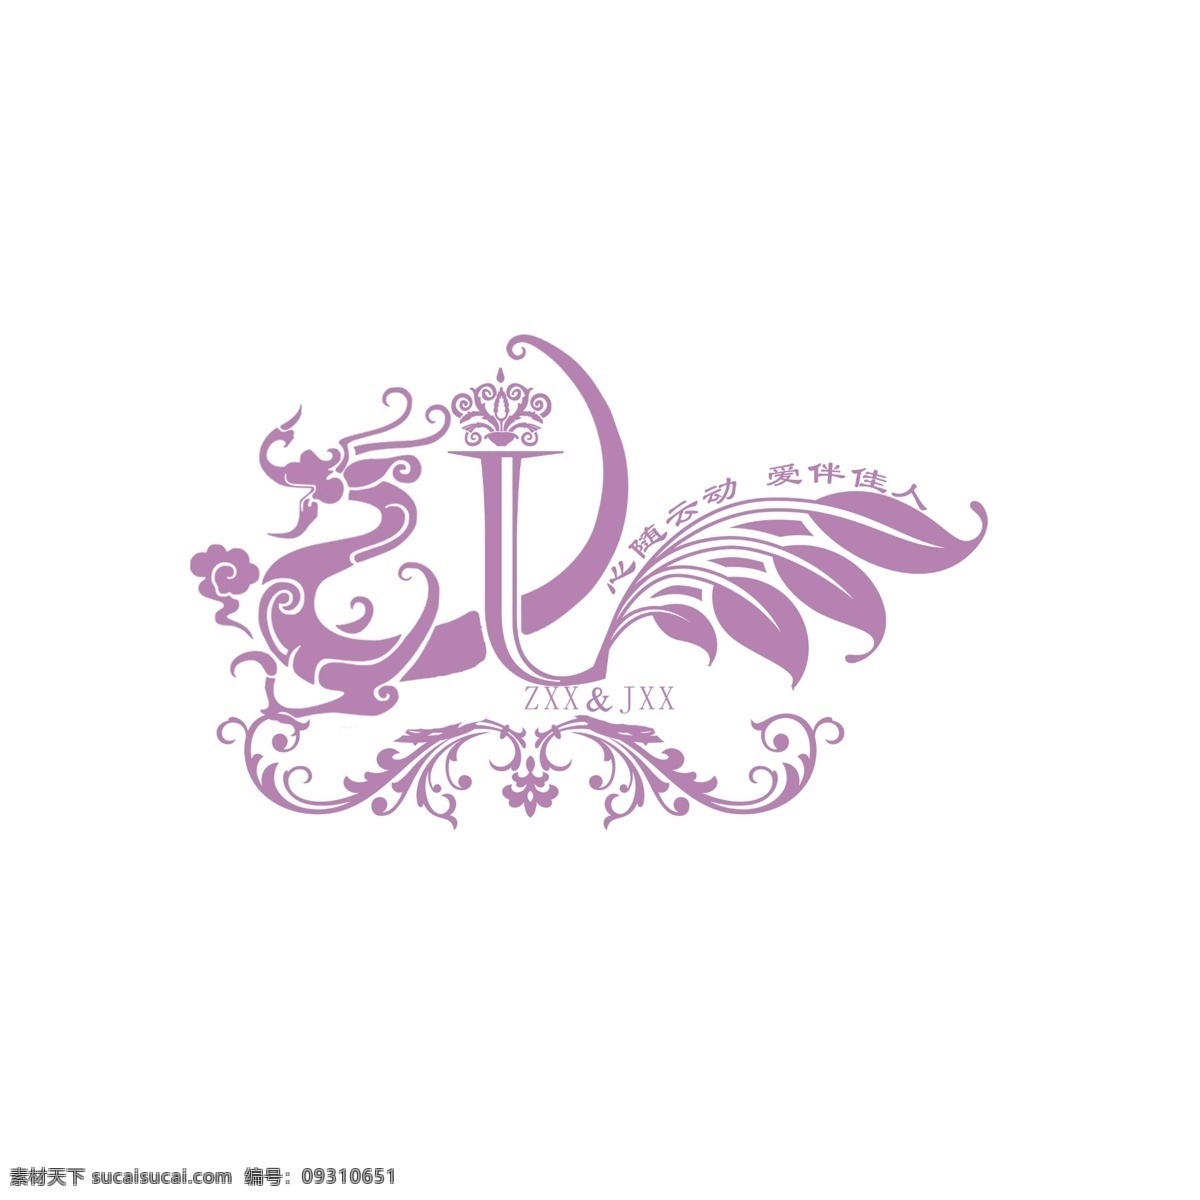 婚庆logo 婚庆 logo j z 婚庆背景 婚礼 标志图标 其他图标